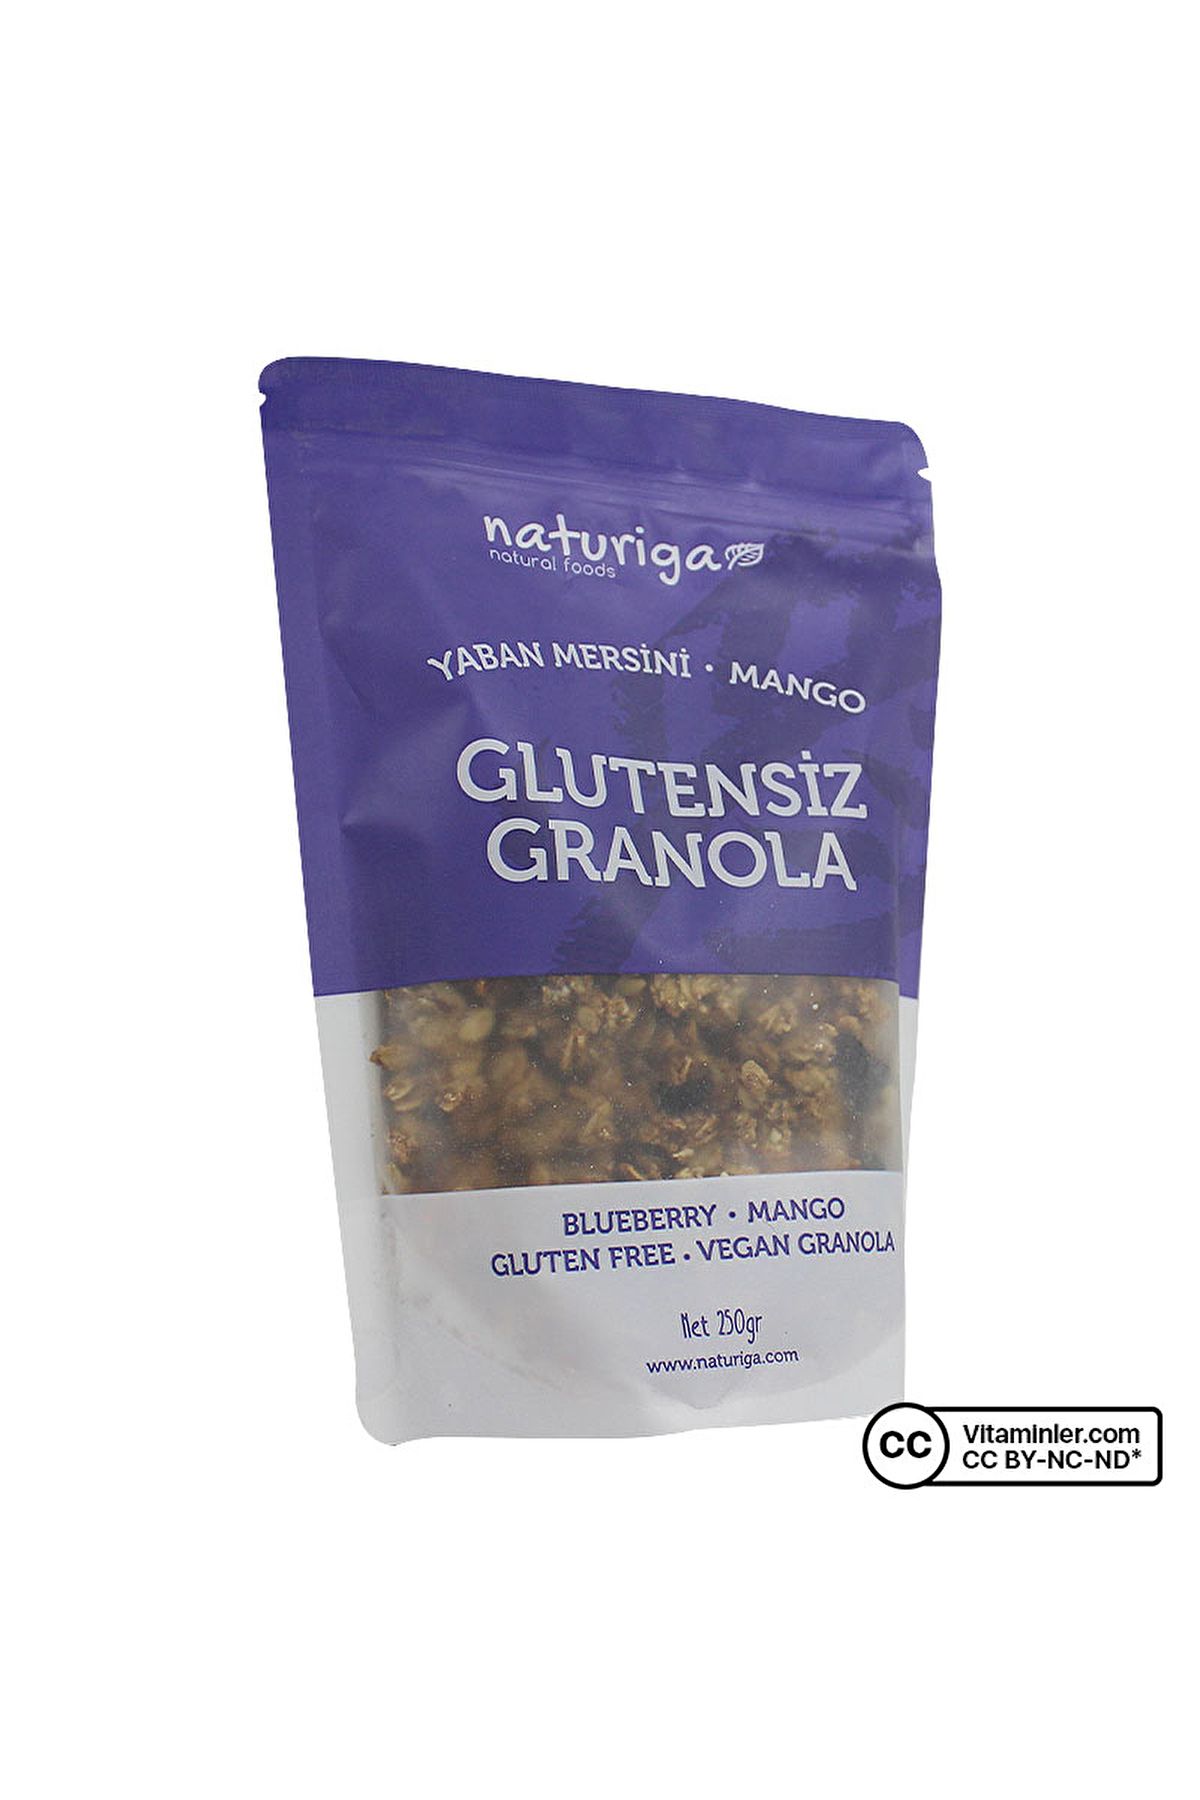 Naturiga Glutensiz Granola Yaban Mersini 250 gr